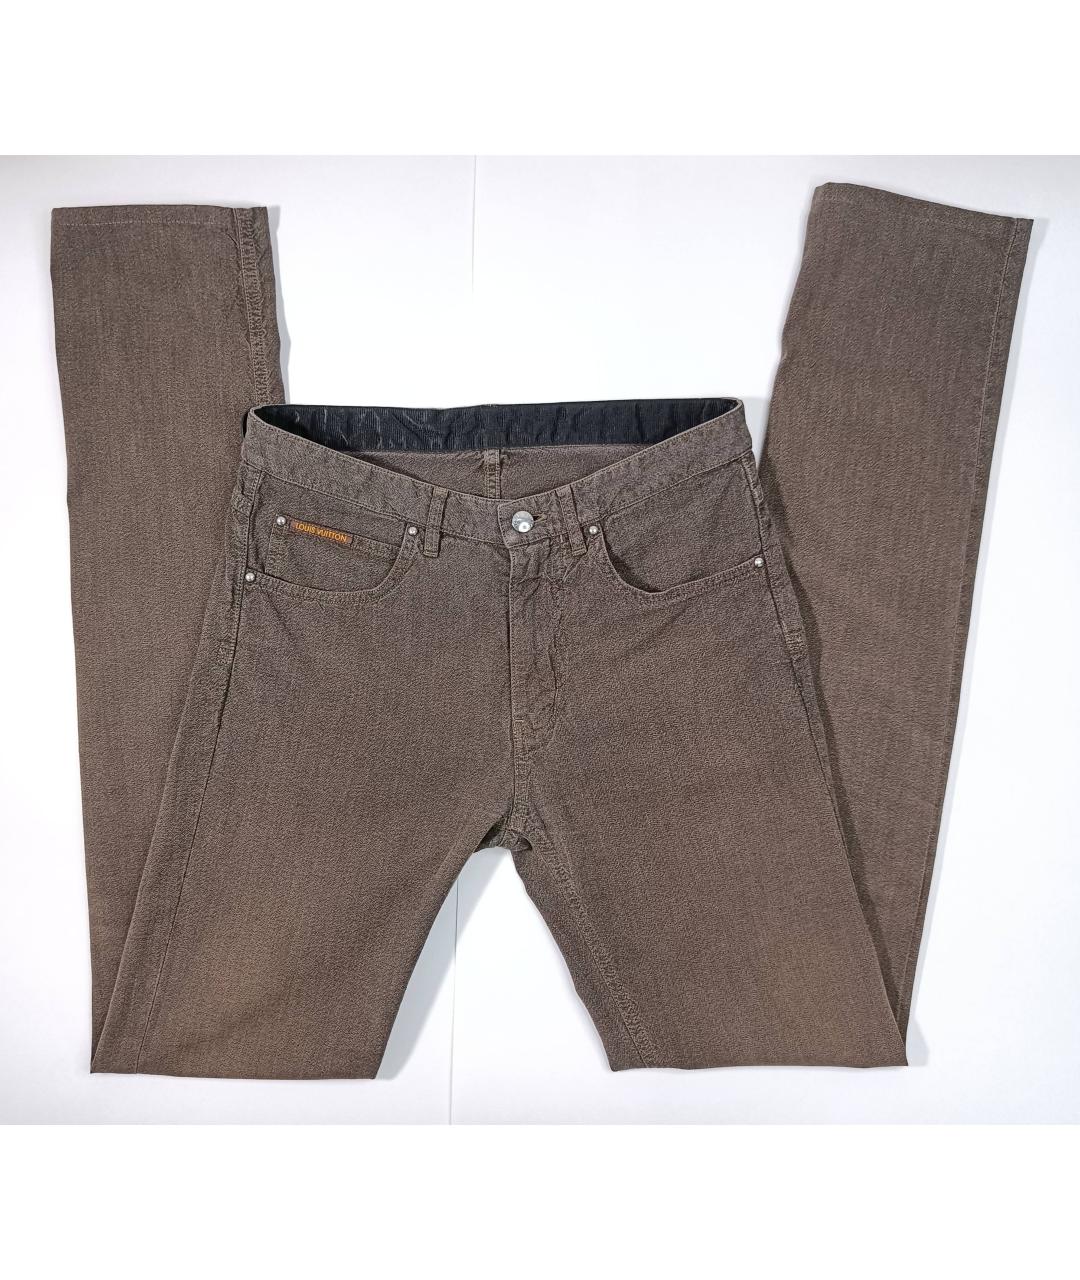 LOUIS VUITTON PRE-OWNED Хаки хлопковые джинсы скинни, фото 2